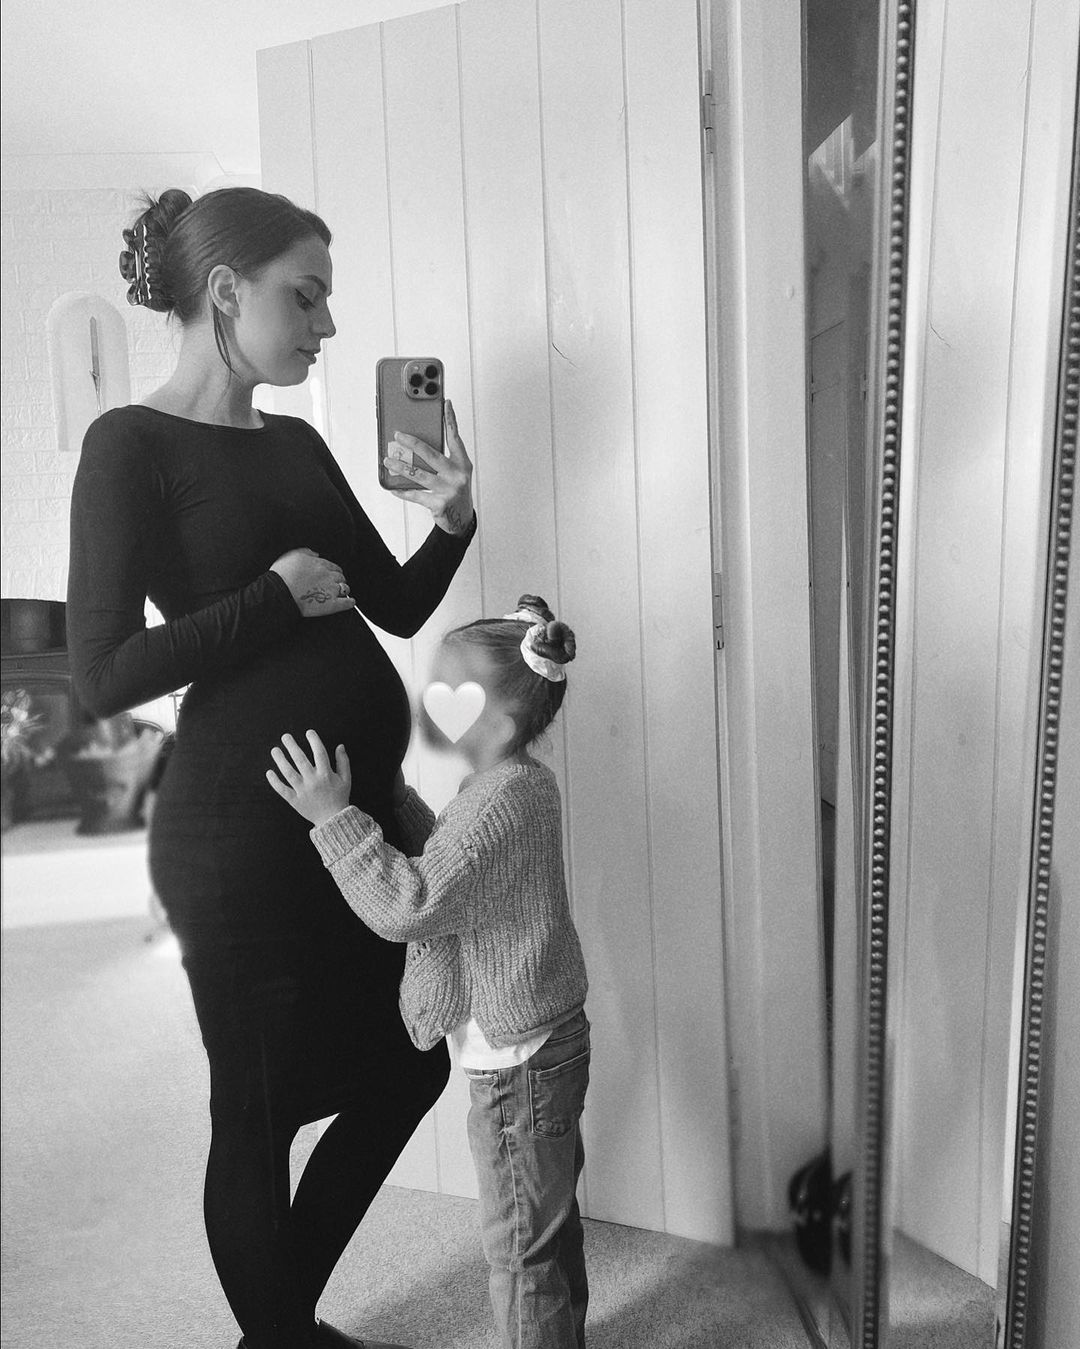 Anfang des Jahres veröffentlichte sie das erste Bild ihres wachsenden Bauches, nachdem sie bekannt gegeben hatte, dass sie ihr zweites Kind erwartet